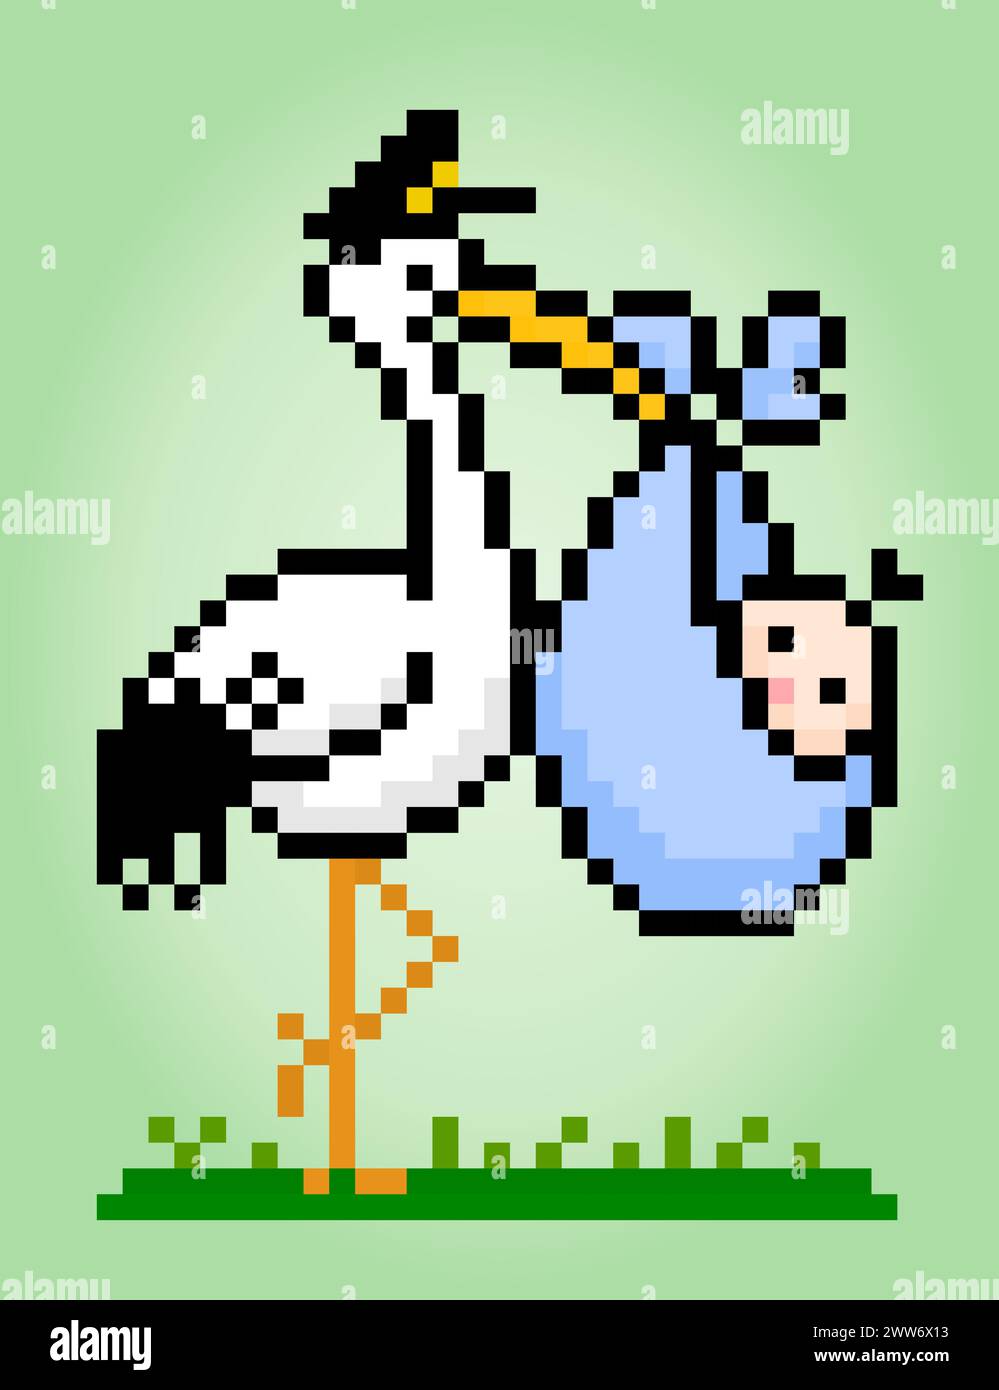 El píxel de 8 bits de una cigüeña lleva al bebé con bolsas, píxel animal para los activos del juego y patrones de punto de cruz en ilustraciones vectoriales. Ilustración del Vector